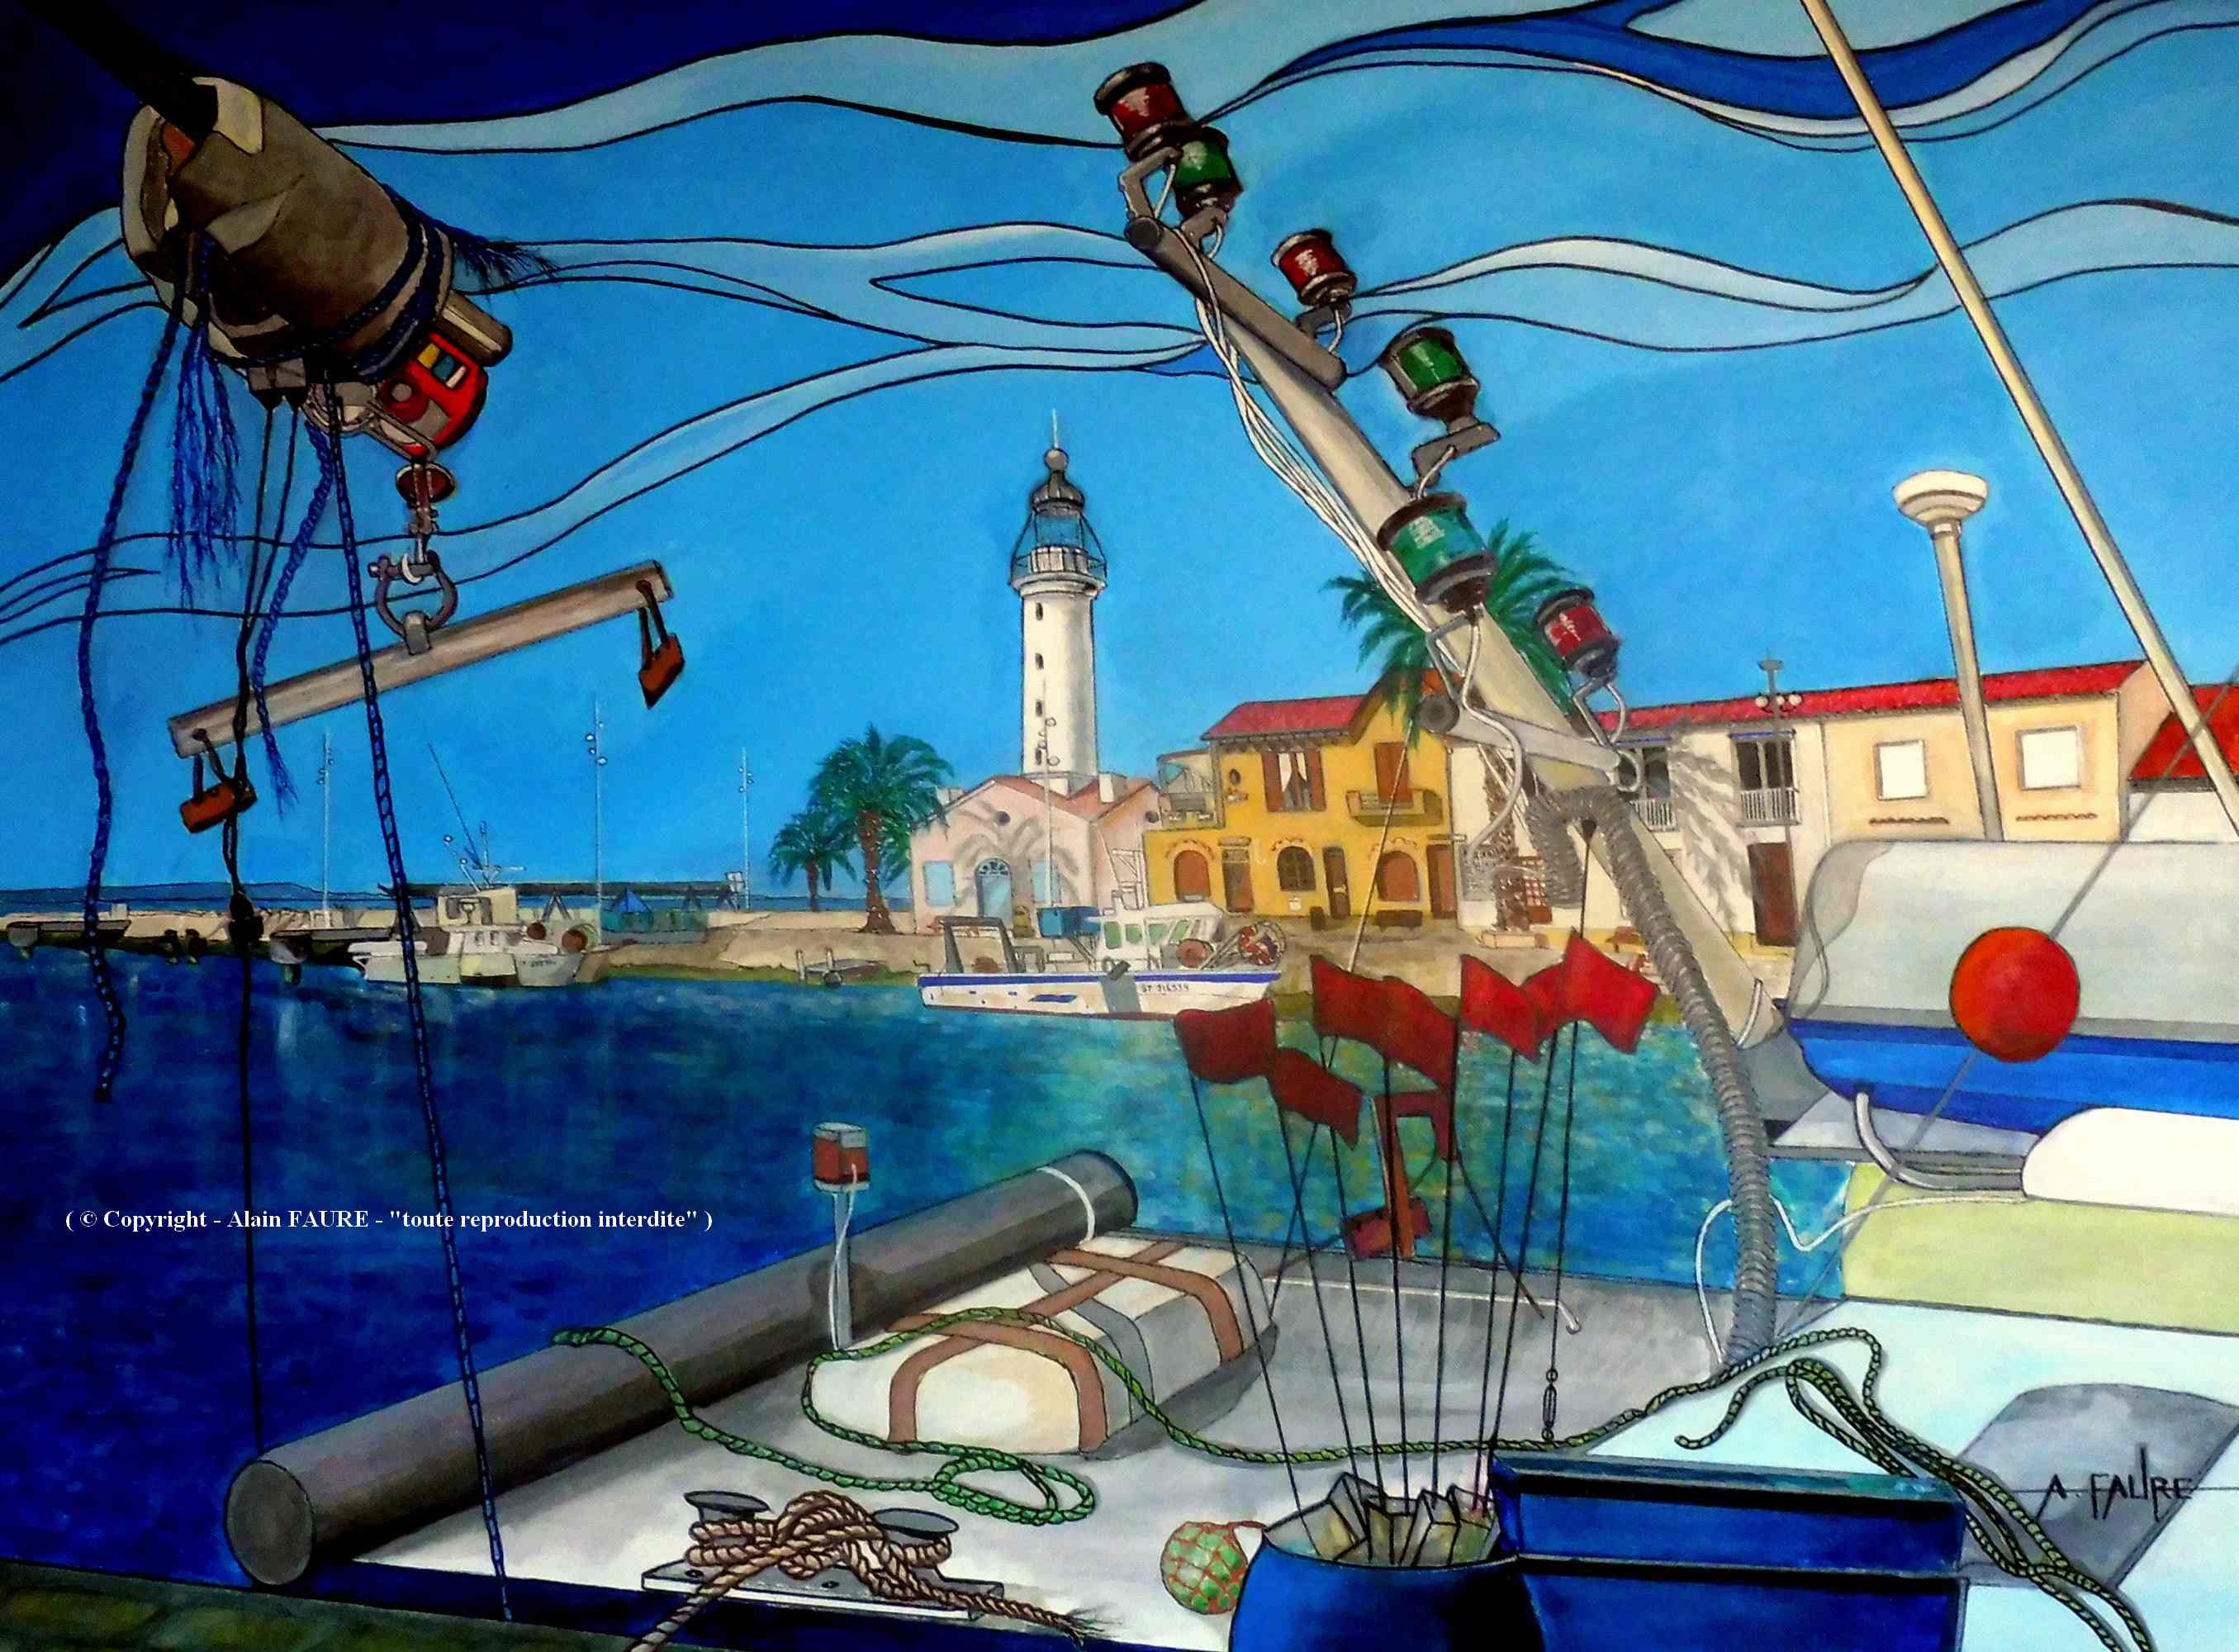 LE GRAU DU ROI               
Peinture Acrylique sur Toile : 100 x 73 cm.........2100 €
Au milieu des plages sablonneuses, des marais salants et des étangs côtiers peuplés de flamants, la ville du Grau-du-Roi encerclée par les eaux méditerranéennes constitue une escapade pittoresque en Camargue. Les visiteurs affluent sur le port de pêche bordé de palmiers, où les cafés et restaurants font face à la mer. Le port de pêche du Grau du Roi est le 2ème port de pêche de Méditerranée française.                                                                                                                                                                                                               
